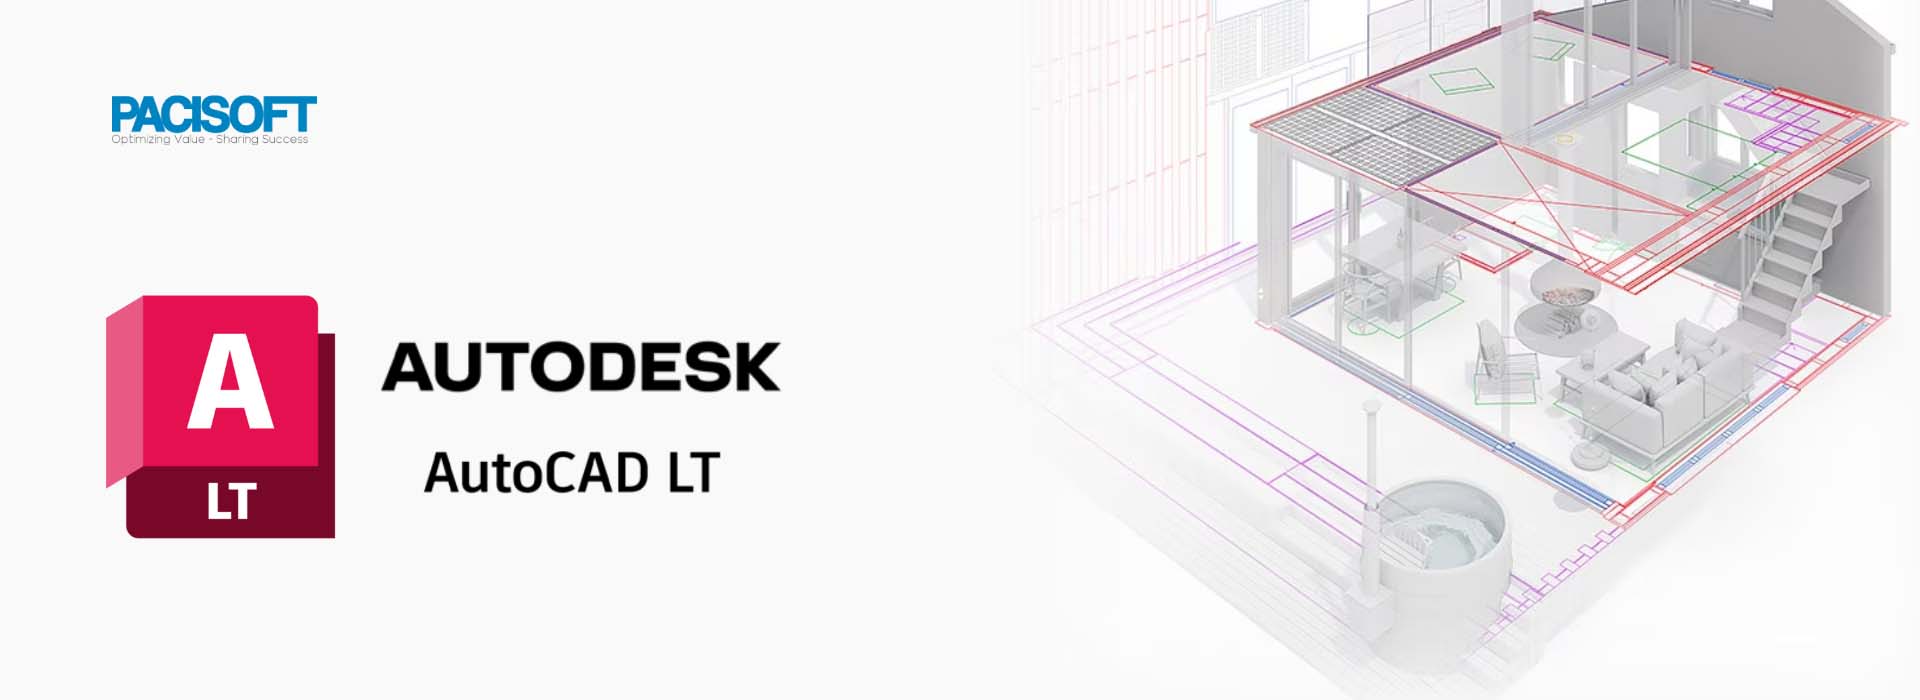 Tìm hiểu Autodesk AutoCAD LT - Thiết kế 2D toàn diện nhờ khả năng tự động hóa 